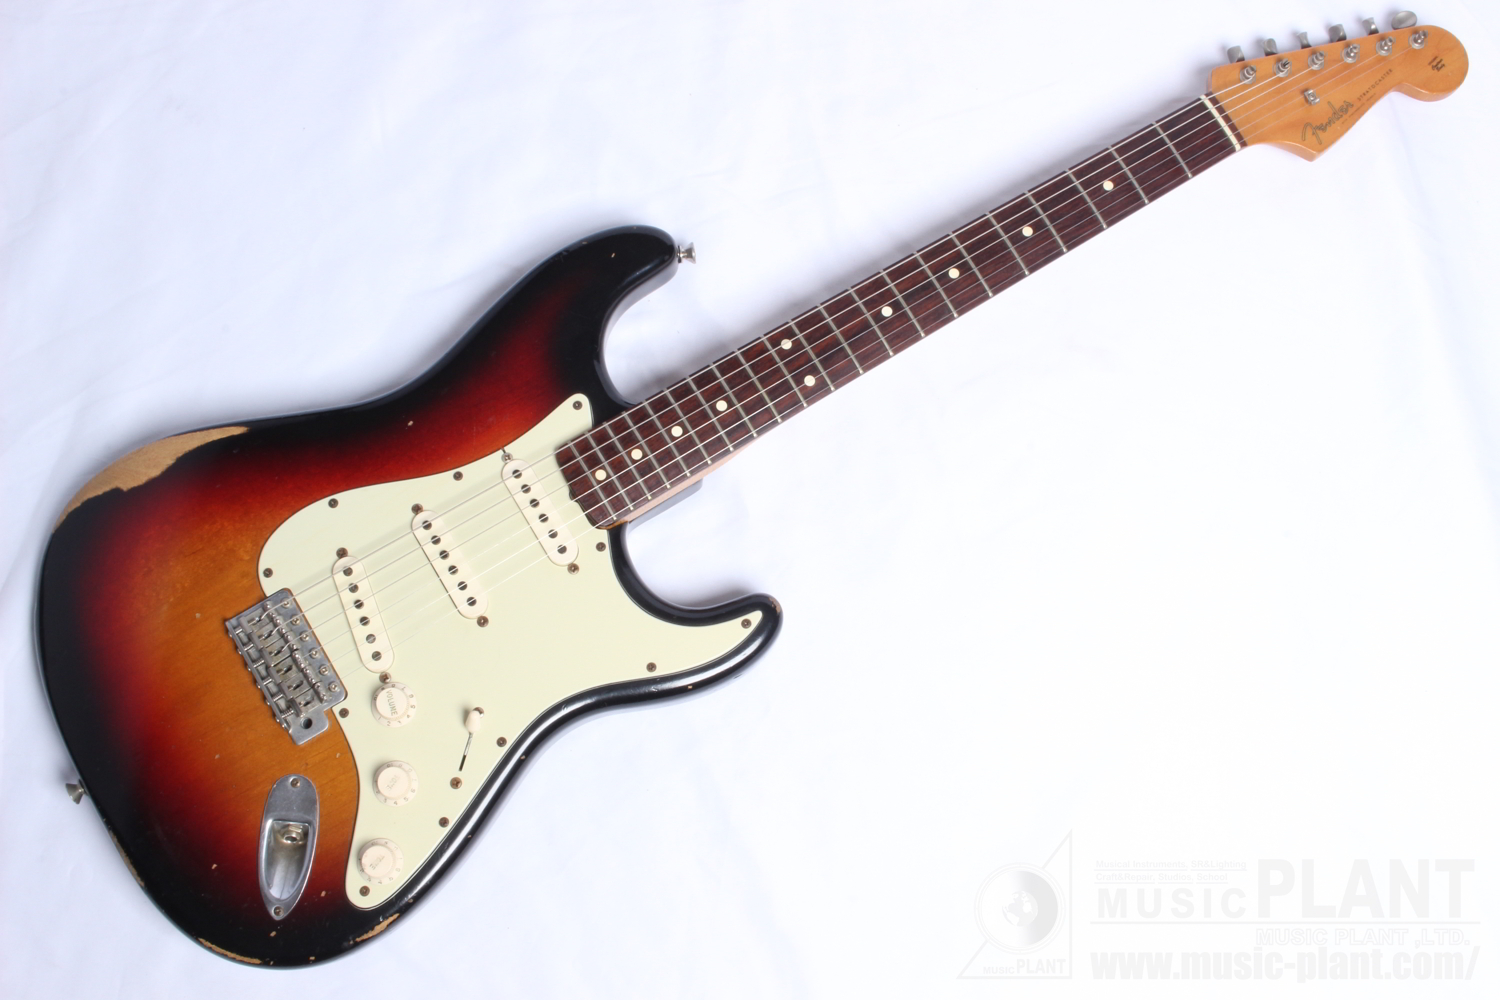 Worn　Fender　Road　WEBSHOP　Classic　PLANT　Stratocaster中古品()売却済みです。あしからずご了承ください。　Seriesシリーズ　60s　MUSIC